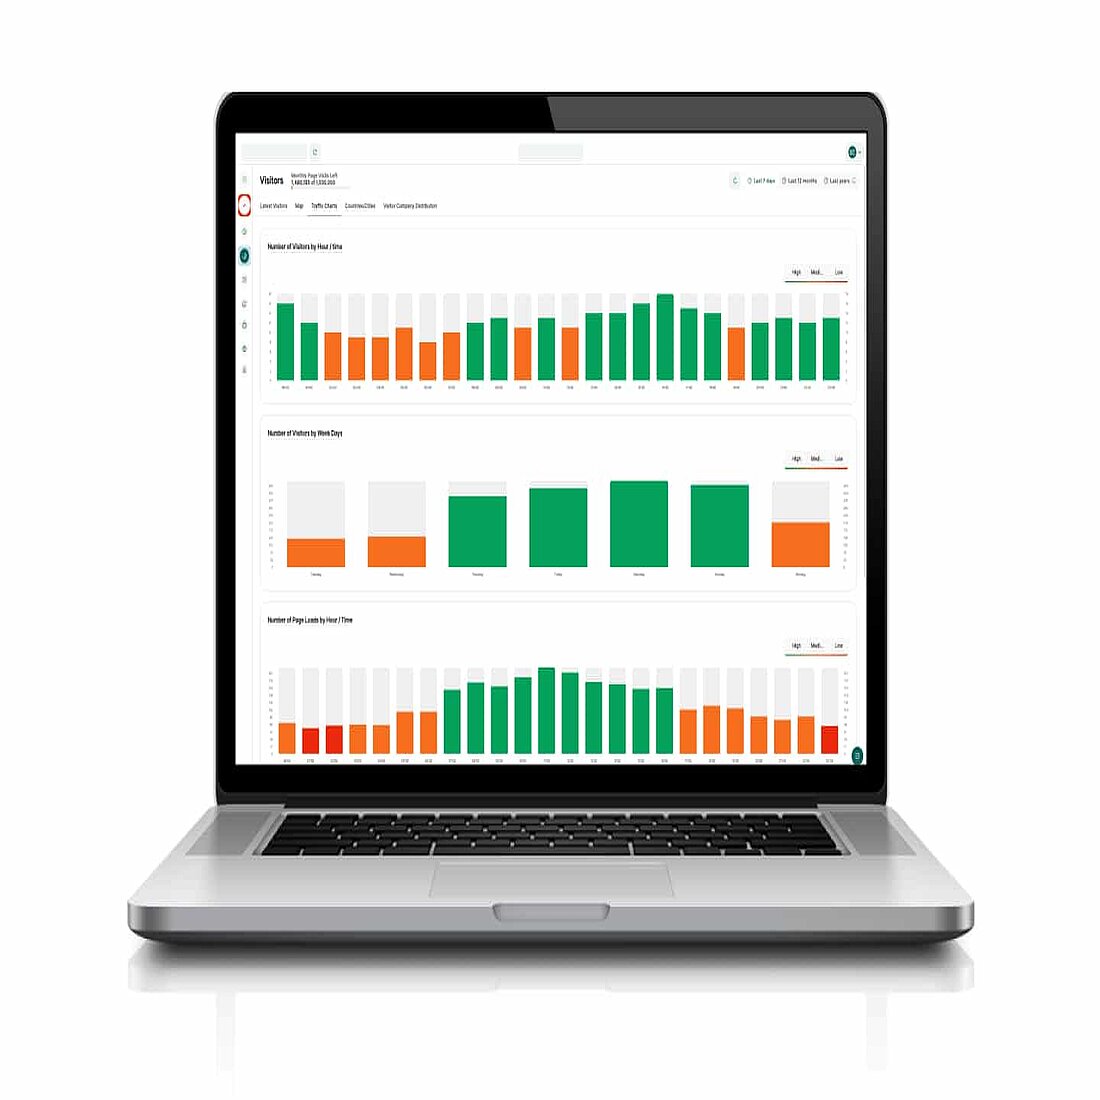 TWIPLA's Weebly.com-ready analytics platform